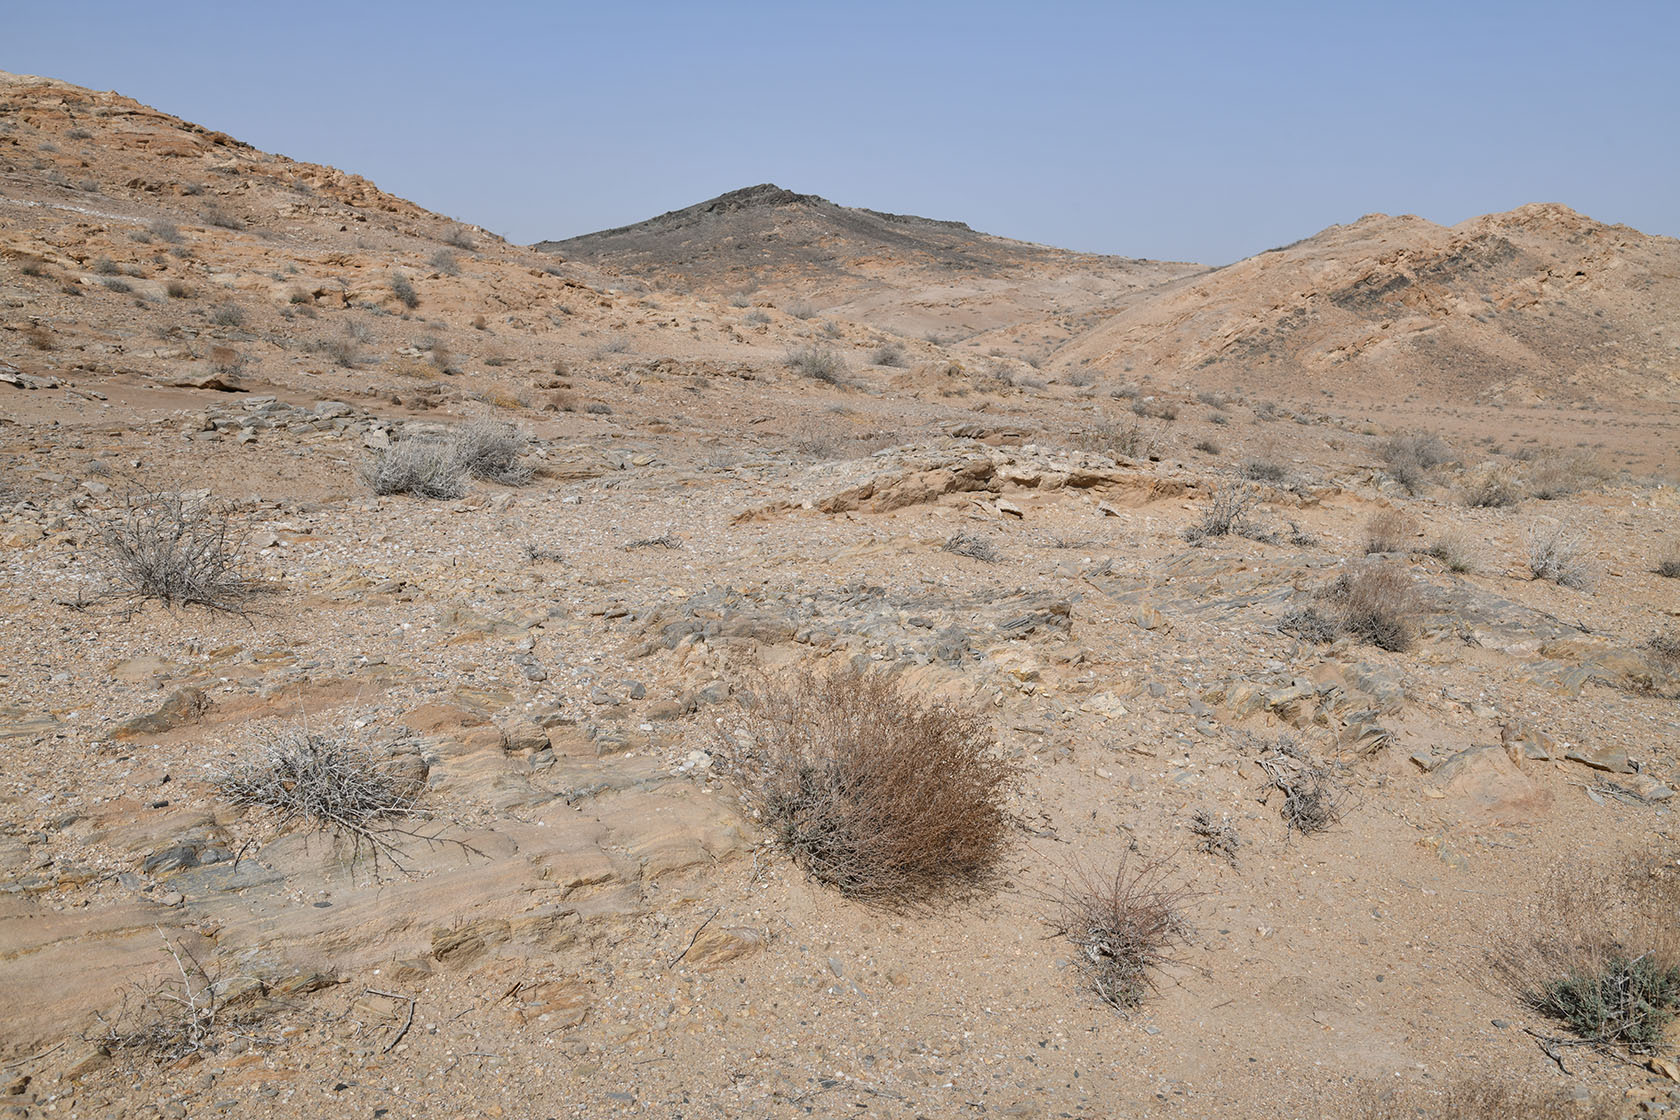 Султан-Увайс, image of landscape/habitat.